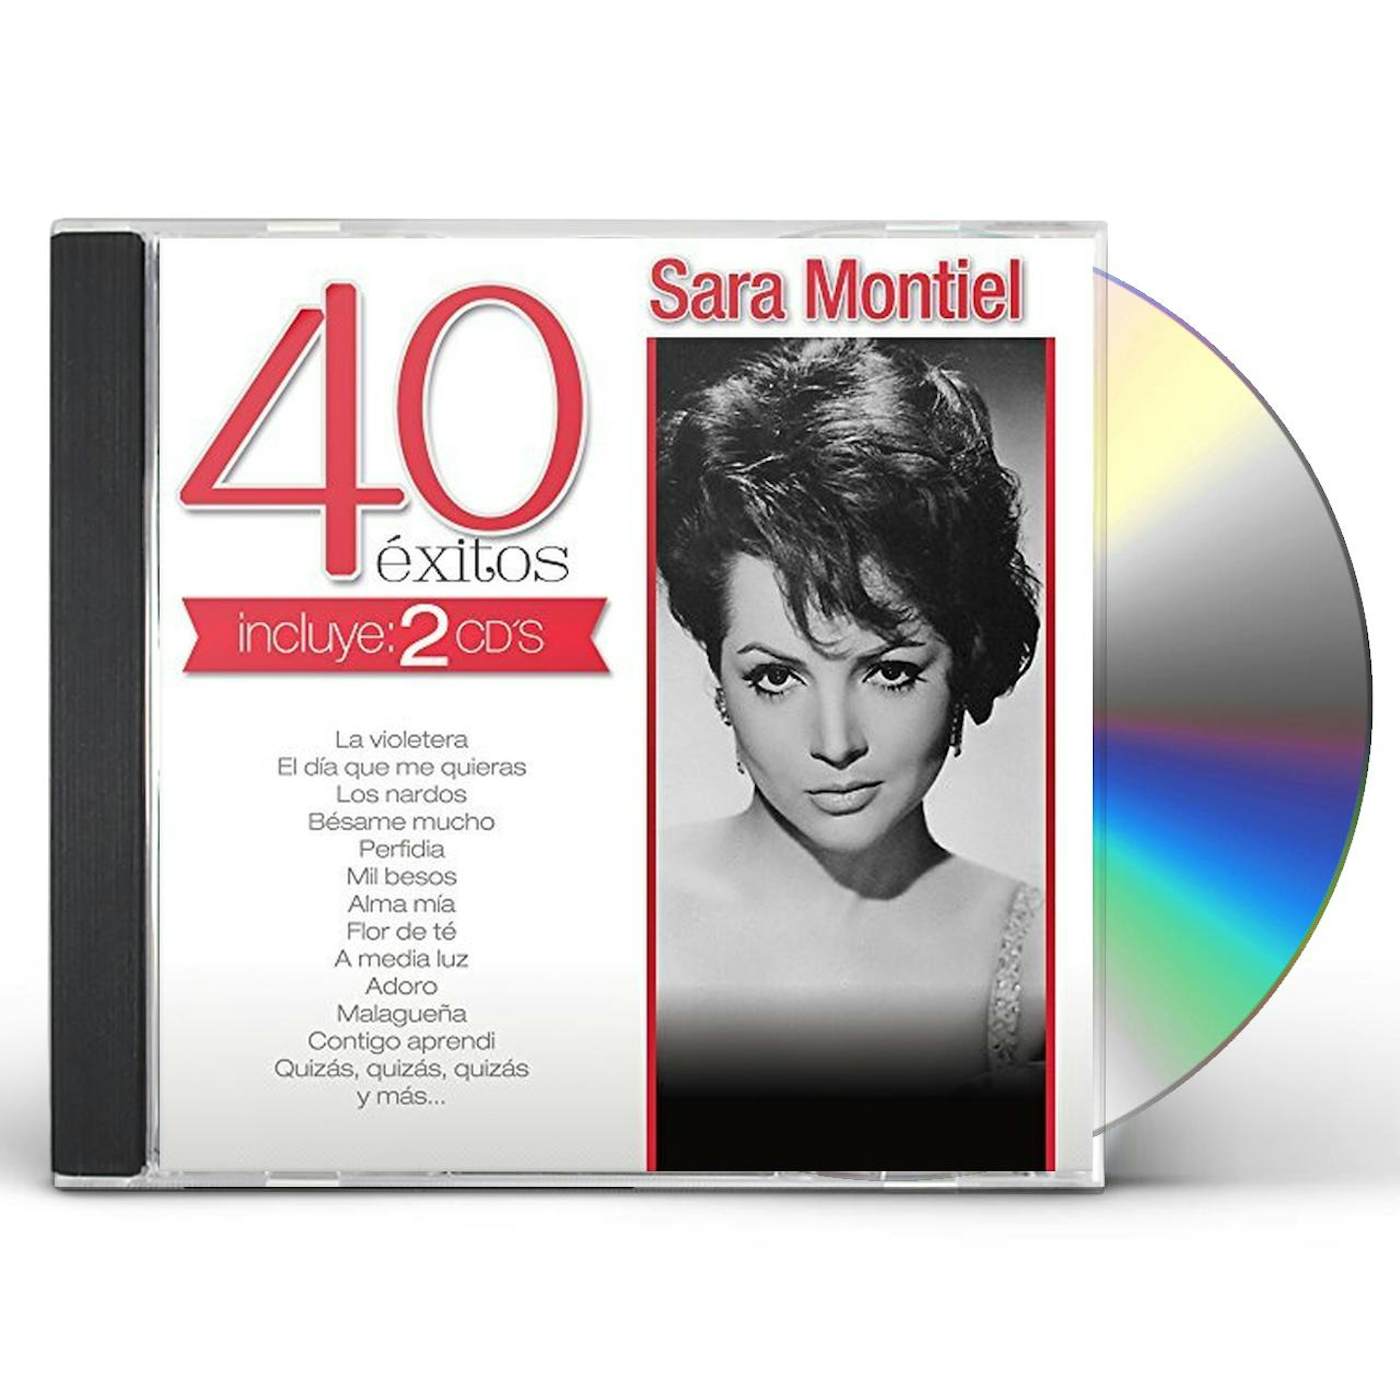 Sara Montiel 40 EXITOS CD